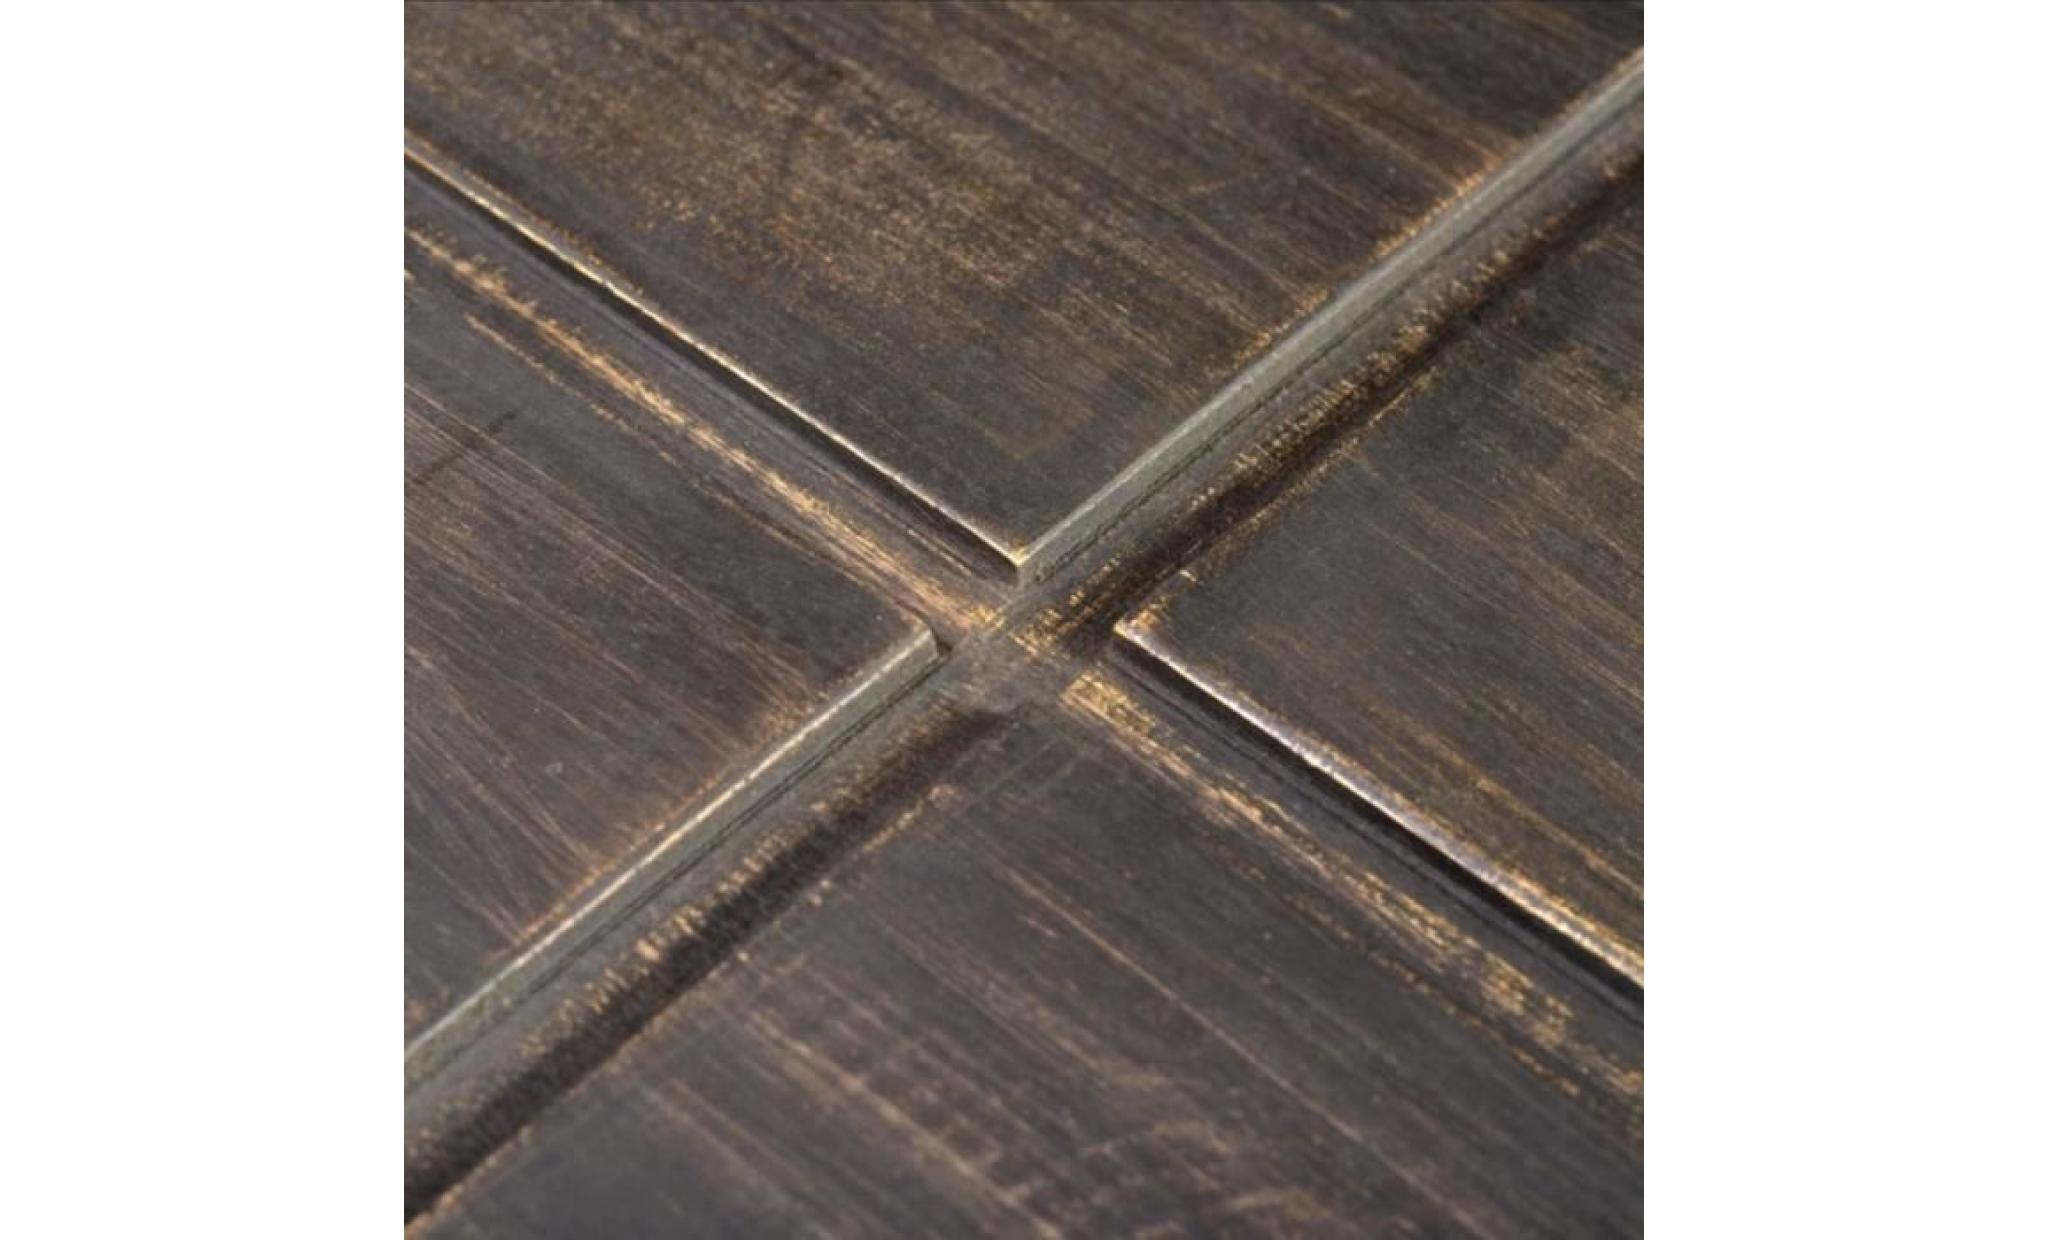 table basse de salon scandinave 68 x 68 x 30 cmstyle contemporain industriel consoles carrée marron foncé bois massif de manguier pas cher